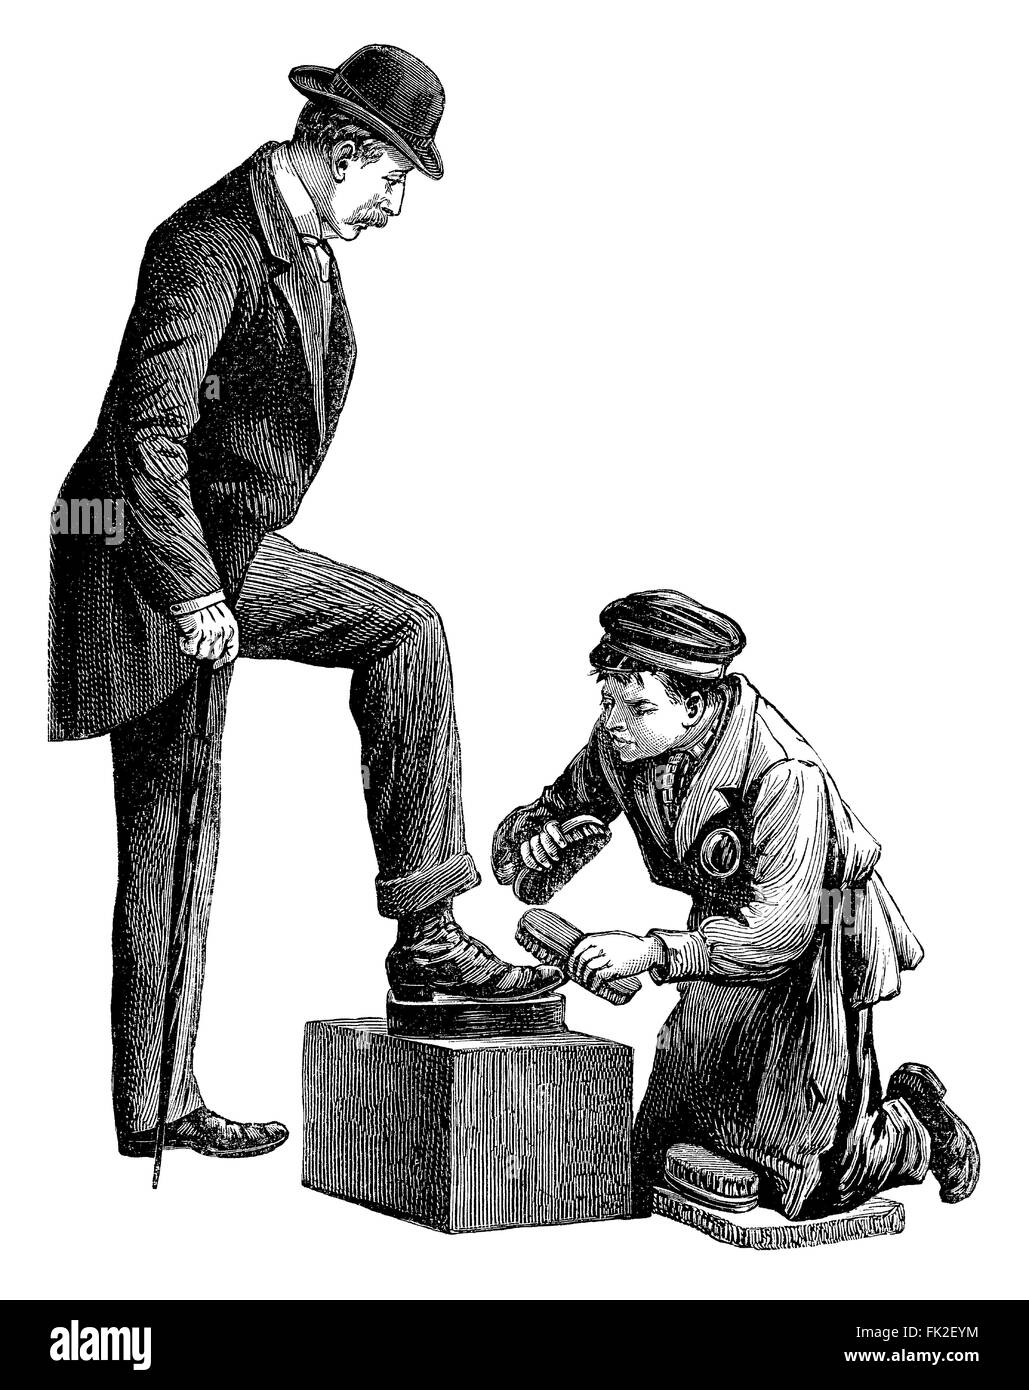 Schwarz / weiß-Gravur von einem Schuhputzer, Polieren die Schuhe von einem Herrn in Melone. Stockfoto